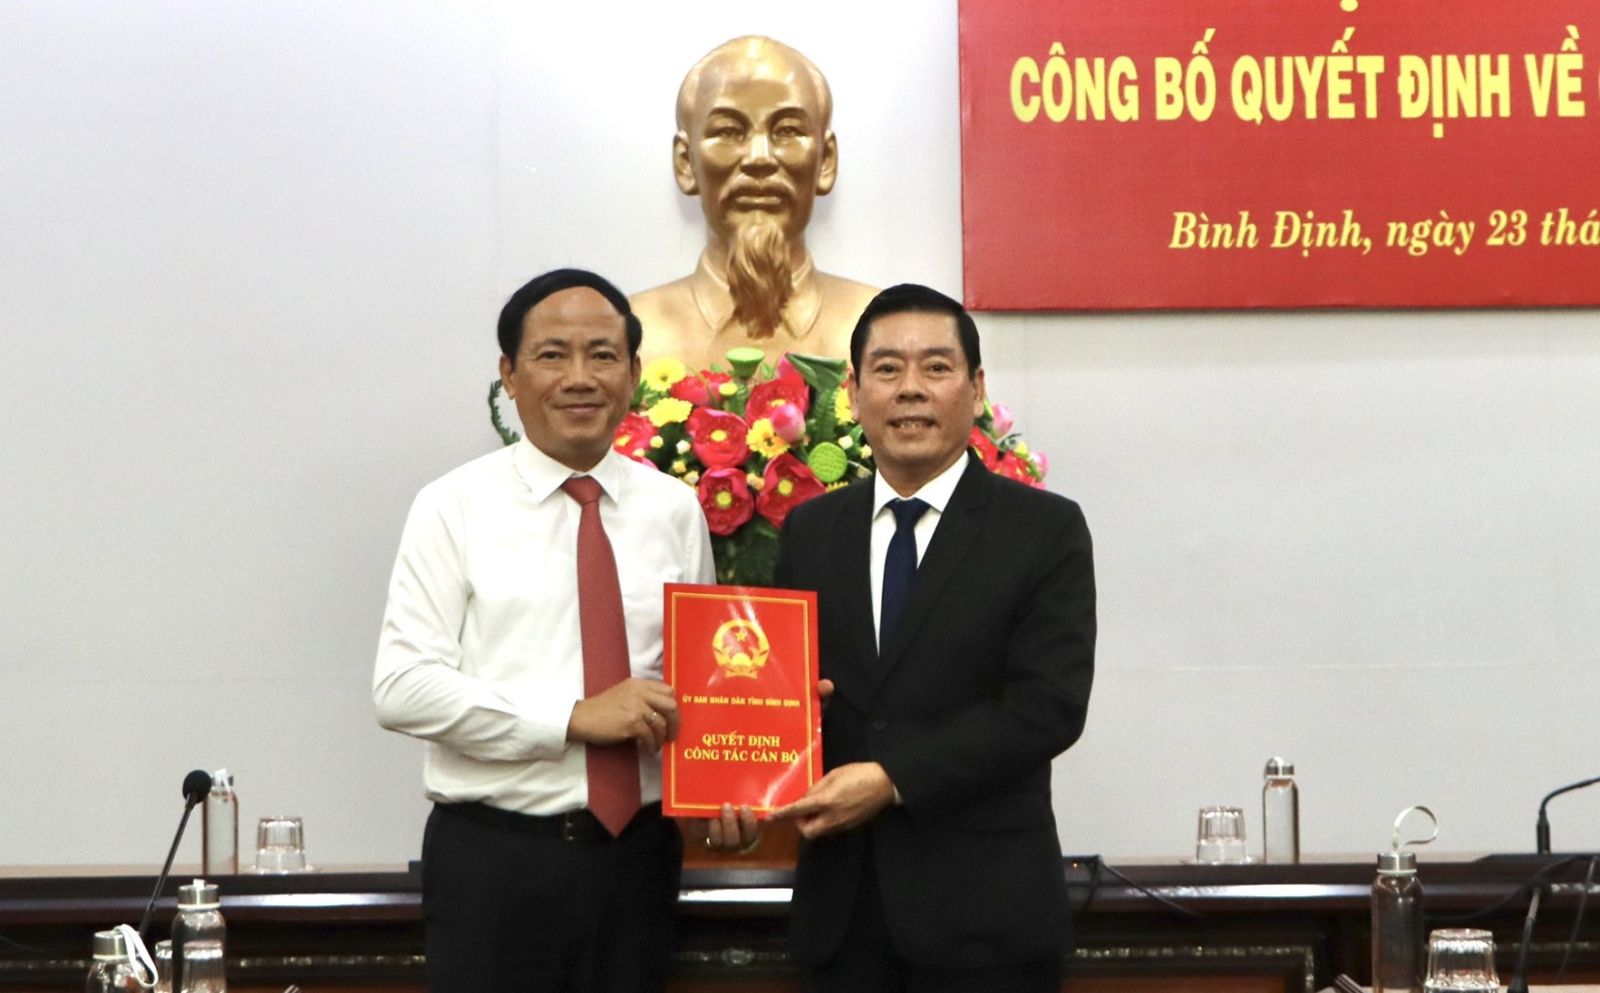 Chủ tịch UBND tỉnh Phạm Anh Tuấn trao Quyết định cho ông Lê Hoàng Nghi - tân Giám đốc Sở Kế hoạch và Đầu tư.